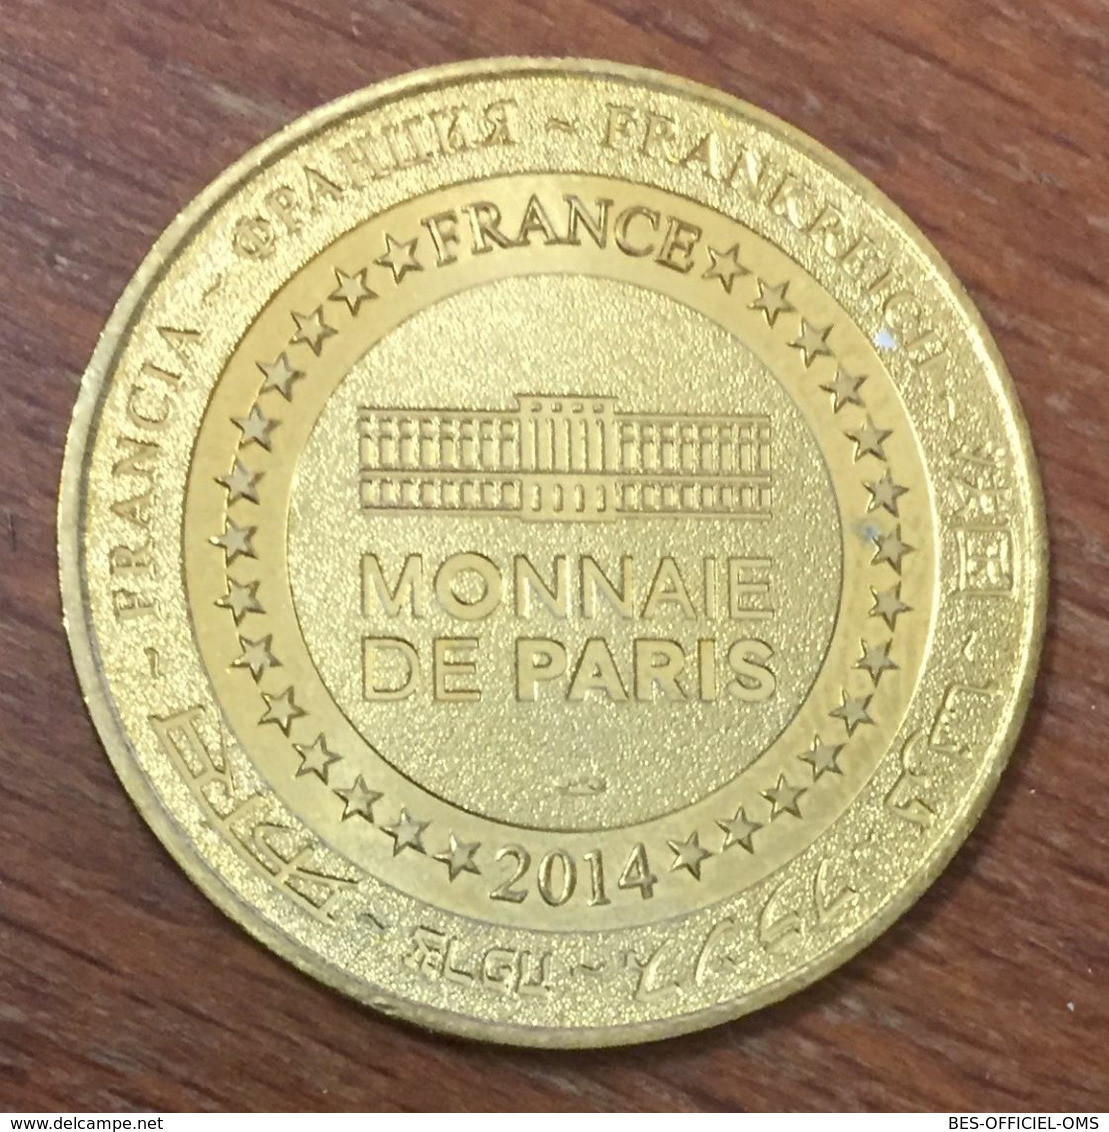 33 BORDEAUX HEURTOIR XVIIIe SIÈCLE MDP 2014 MÉDAILLE SOUVENIR MONNAIE DE PARIS JETON TOURISTIQUE MEDALS COINS TOKENS - 2014